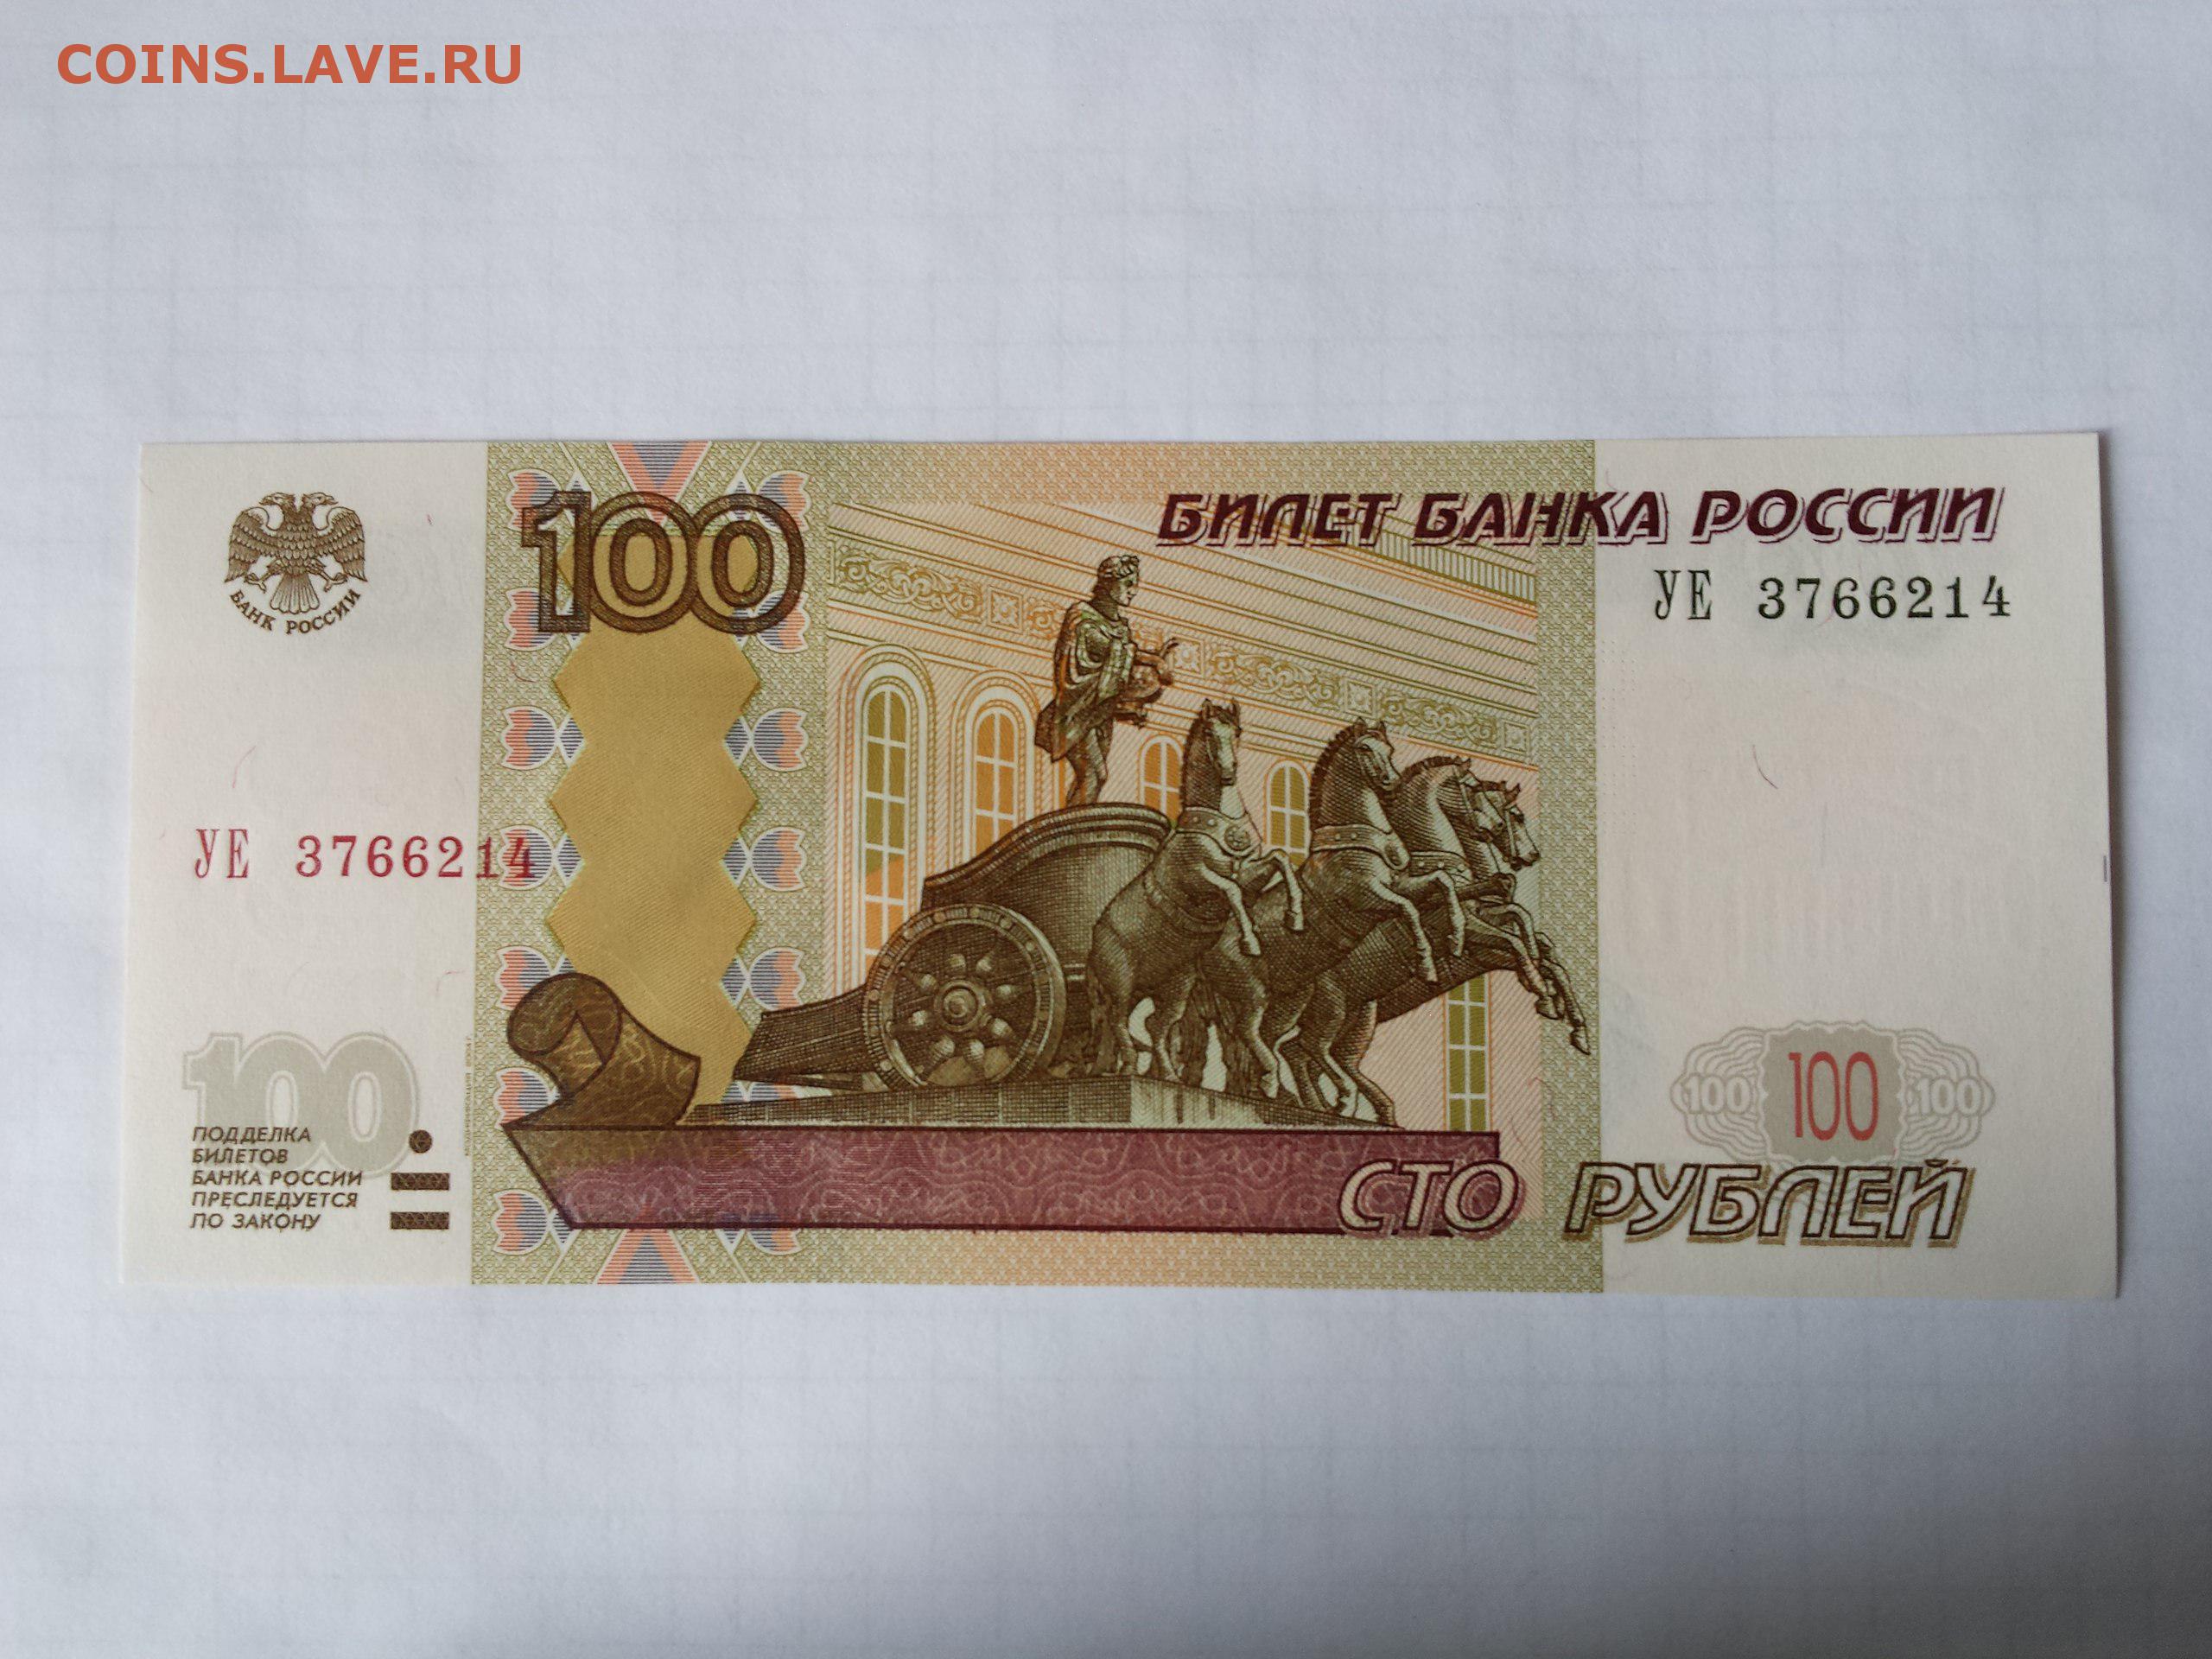 Четыре сто рублей. СТО рублей. 100 Рублей. Купюра 100 рублей. 100 Рублей 1997.